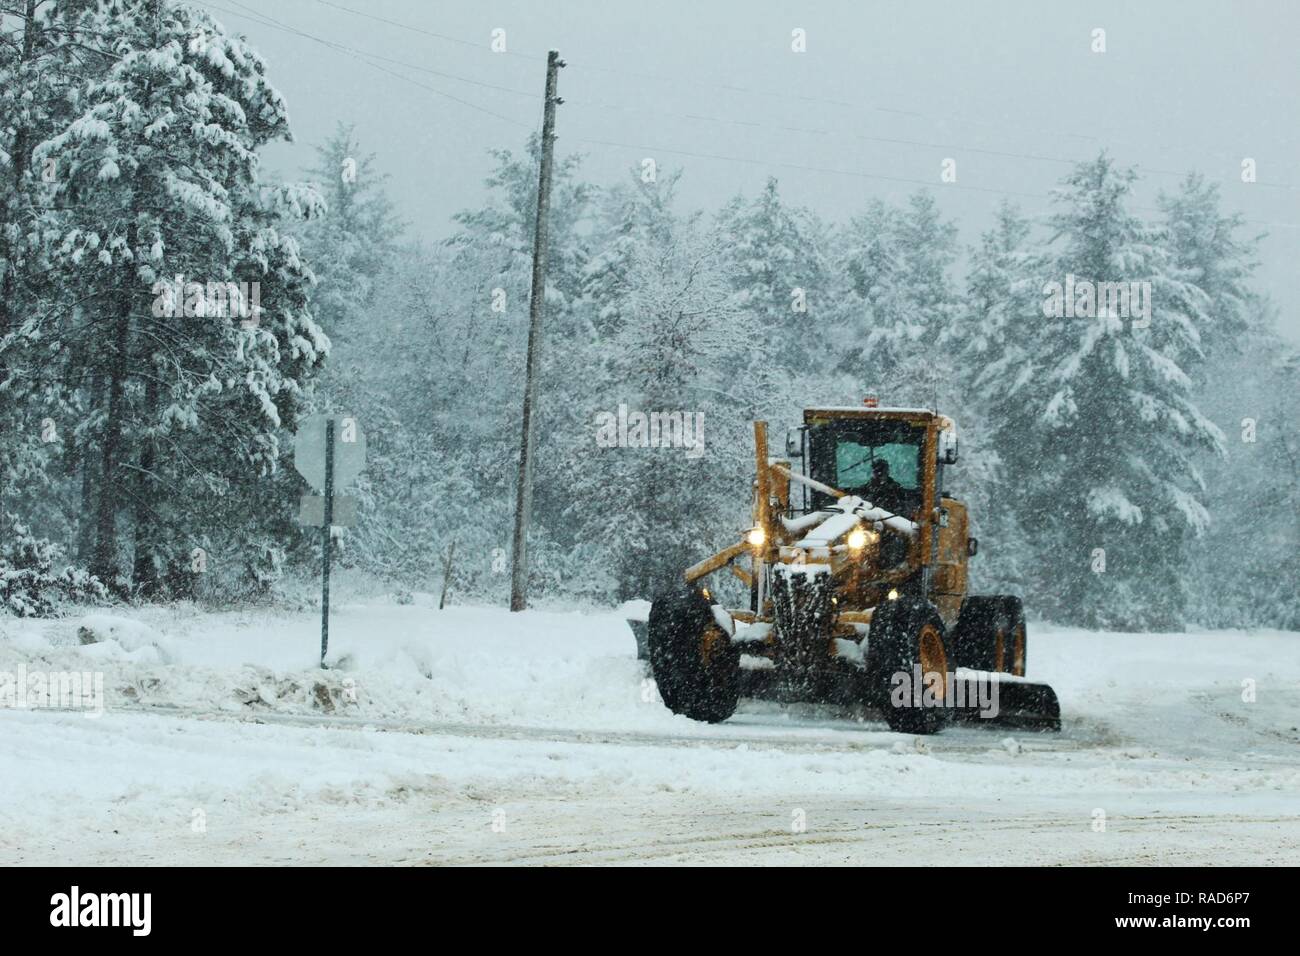 Eine schwere Ausrüstung Fahrer mit dem Fort McCoy Schneeräumen Auftragnehmer, Kaiyuh Services LLC von Anchorage, Alaska, fährt ein Grader Schnee zu bewegen, Jan. 9, 2017, am Fort McCoy. Kaiyuh wurde das Fort McCoy Gelände und Schnee - Ausbau des Auftragnehmers in September 2016. Stockfoto